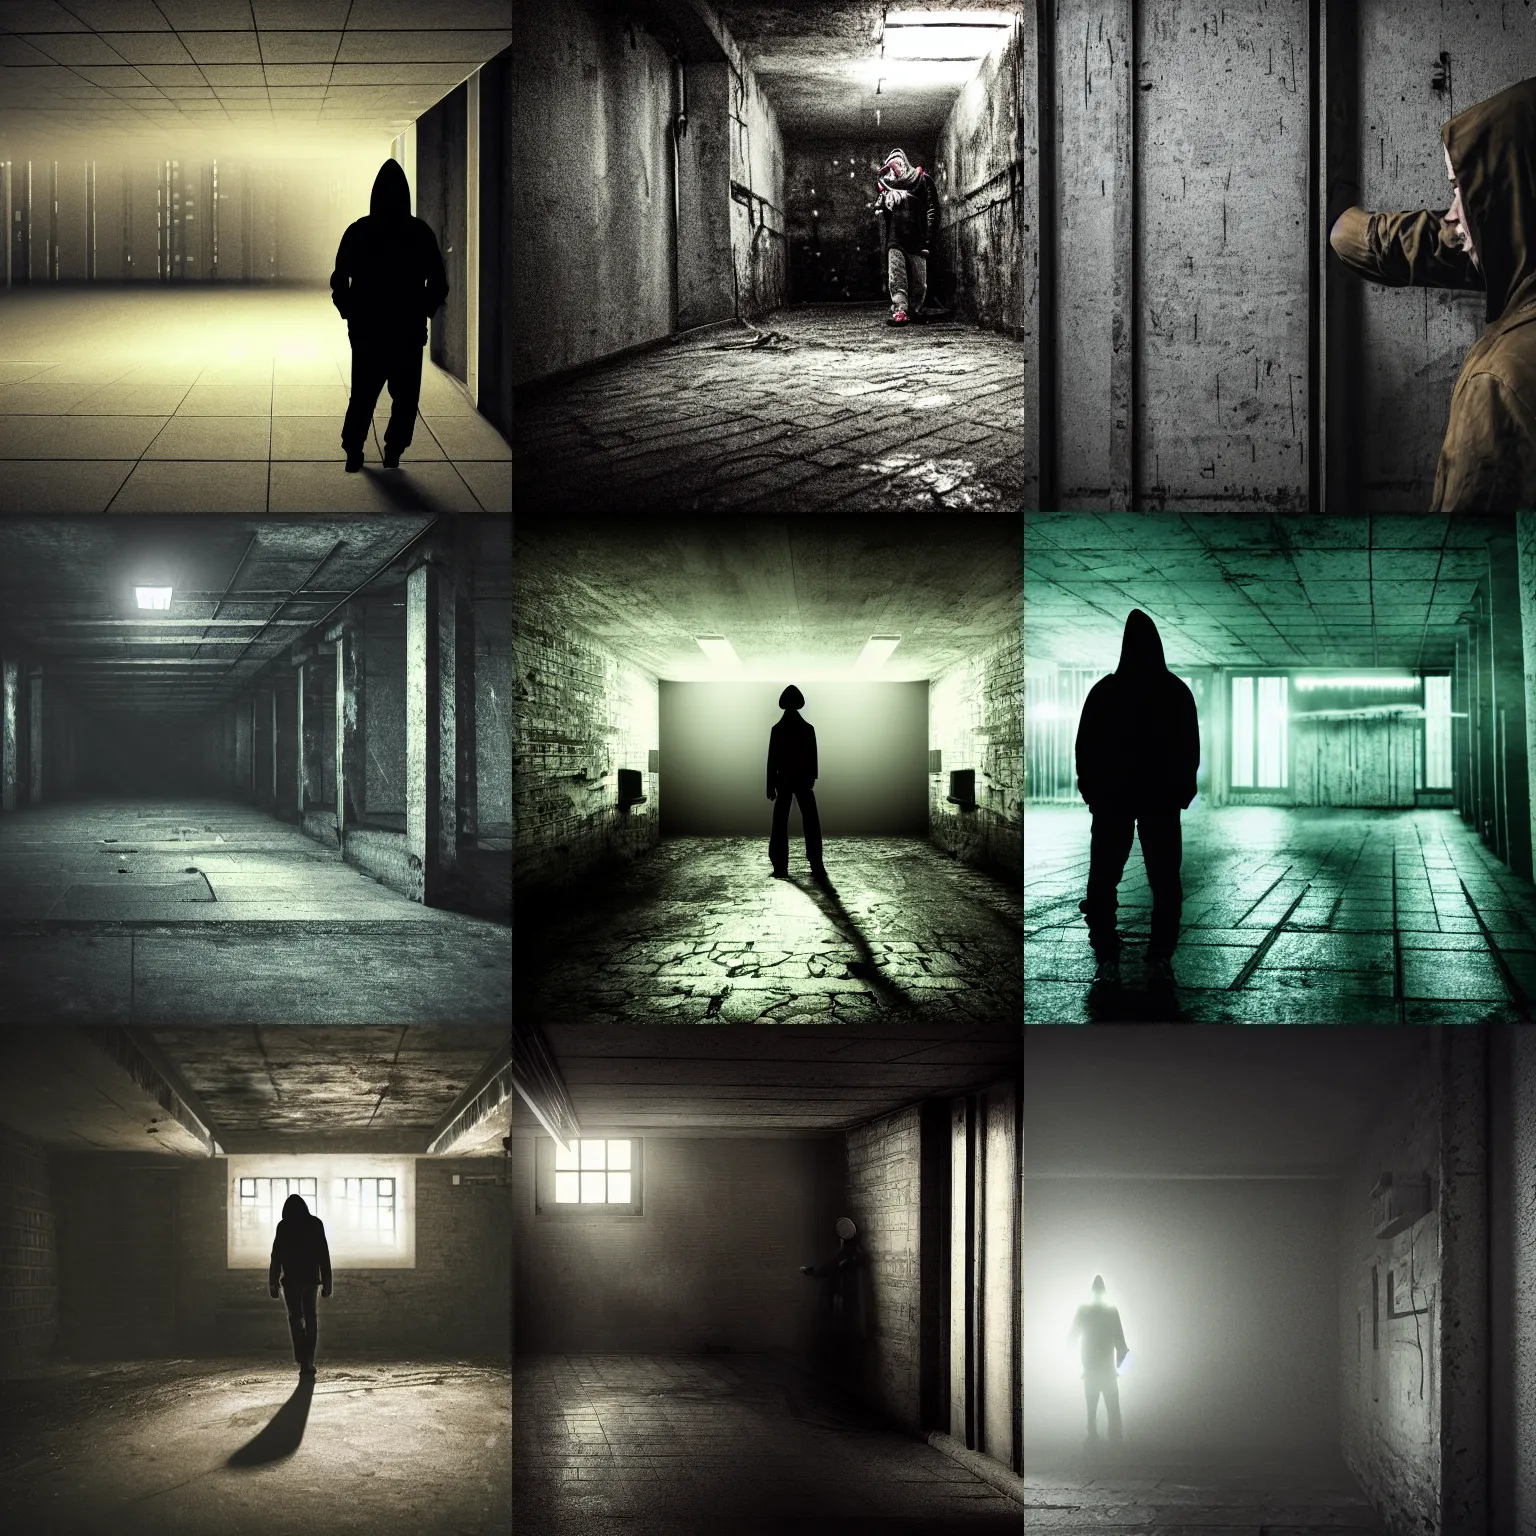 Prompt: hacker in basement, moody, dark, scary